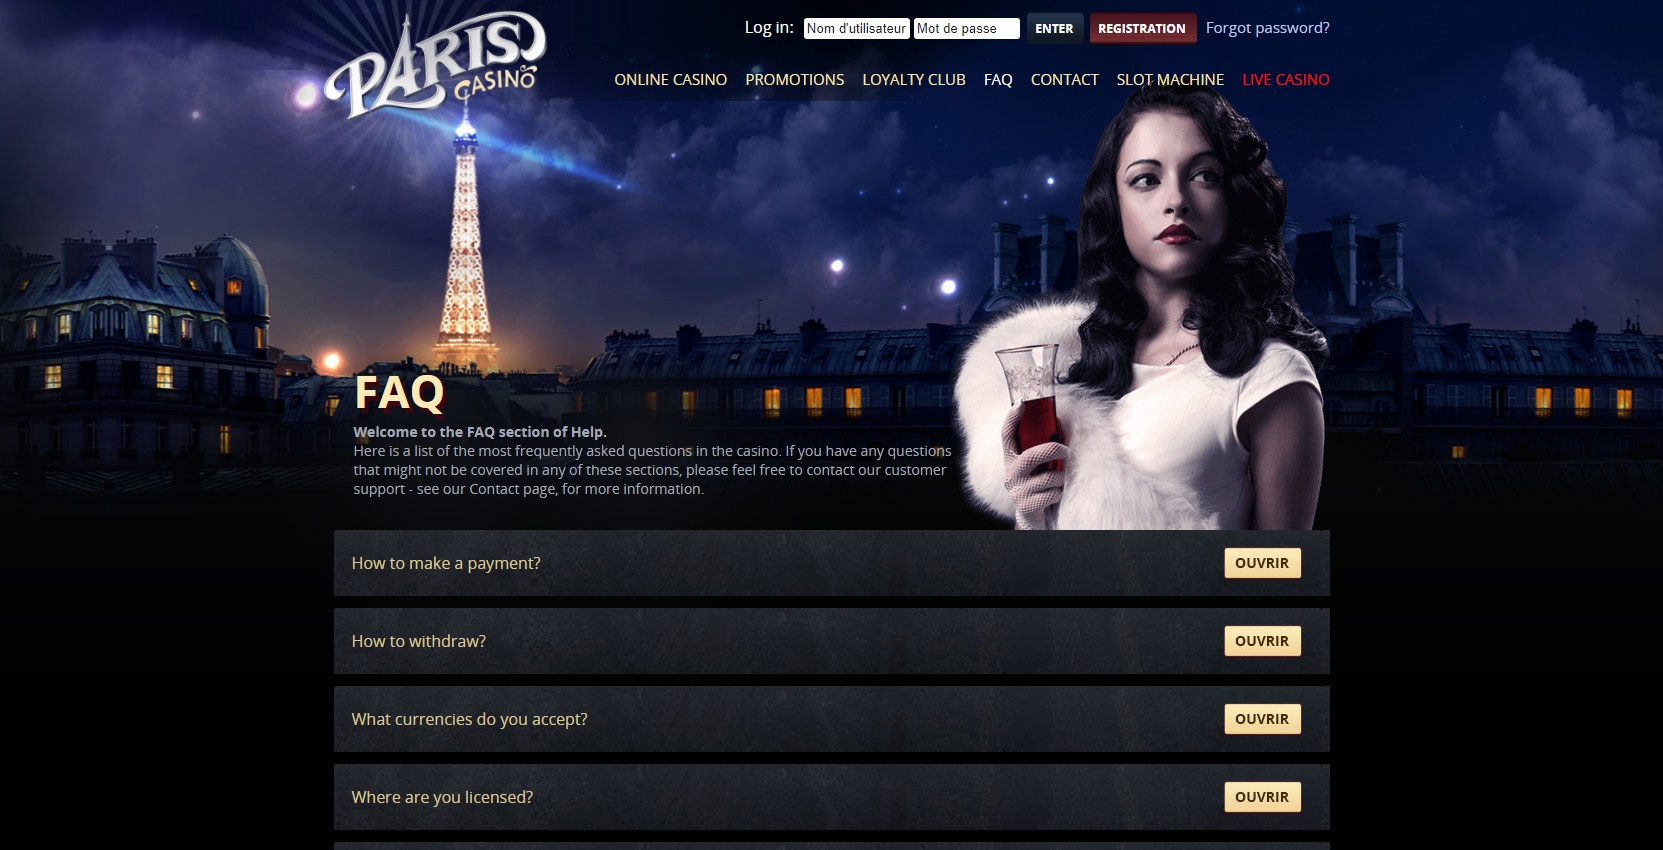 pari casino online